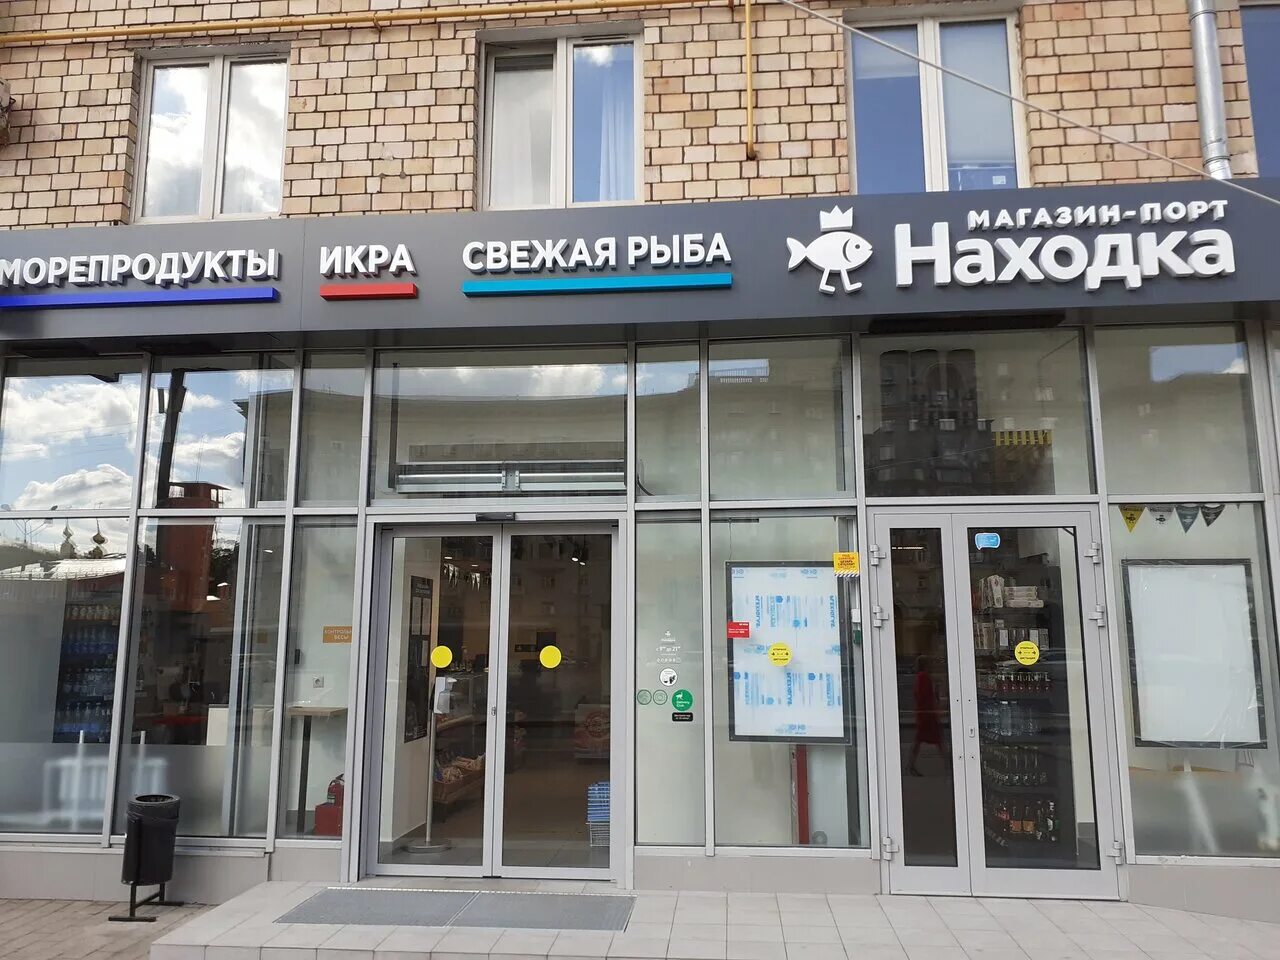 Магазин находка в Москве. Находка магазин рыбы. Находка магазин. Рыбный магазин находка в Москве.